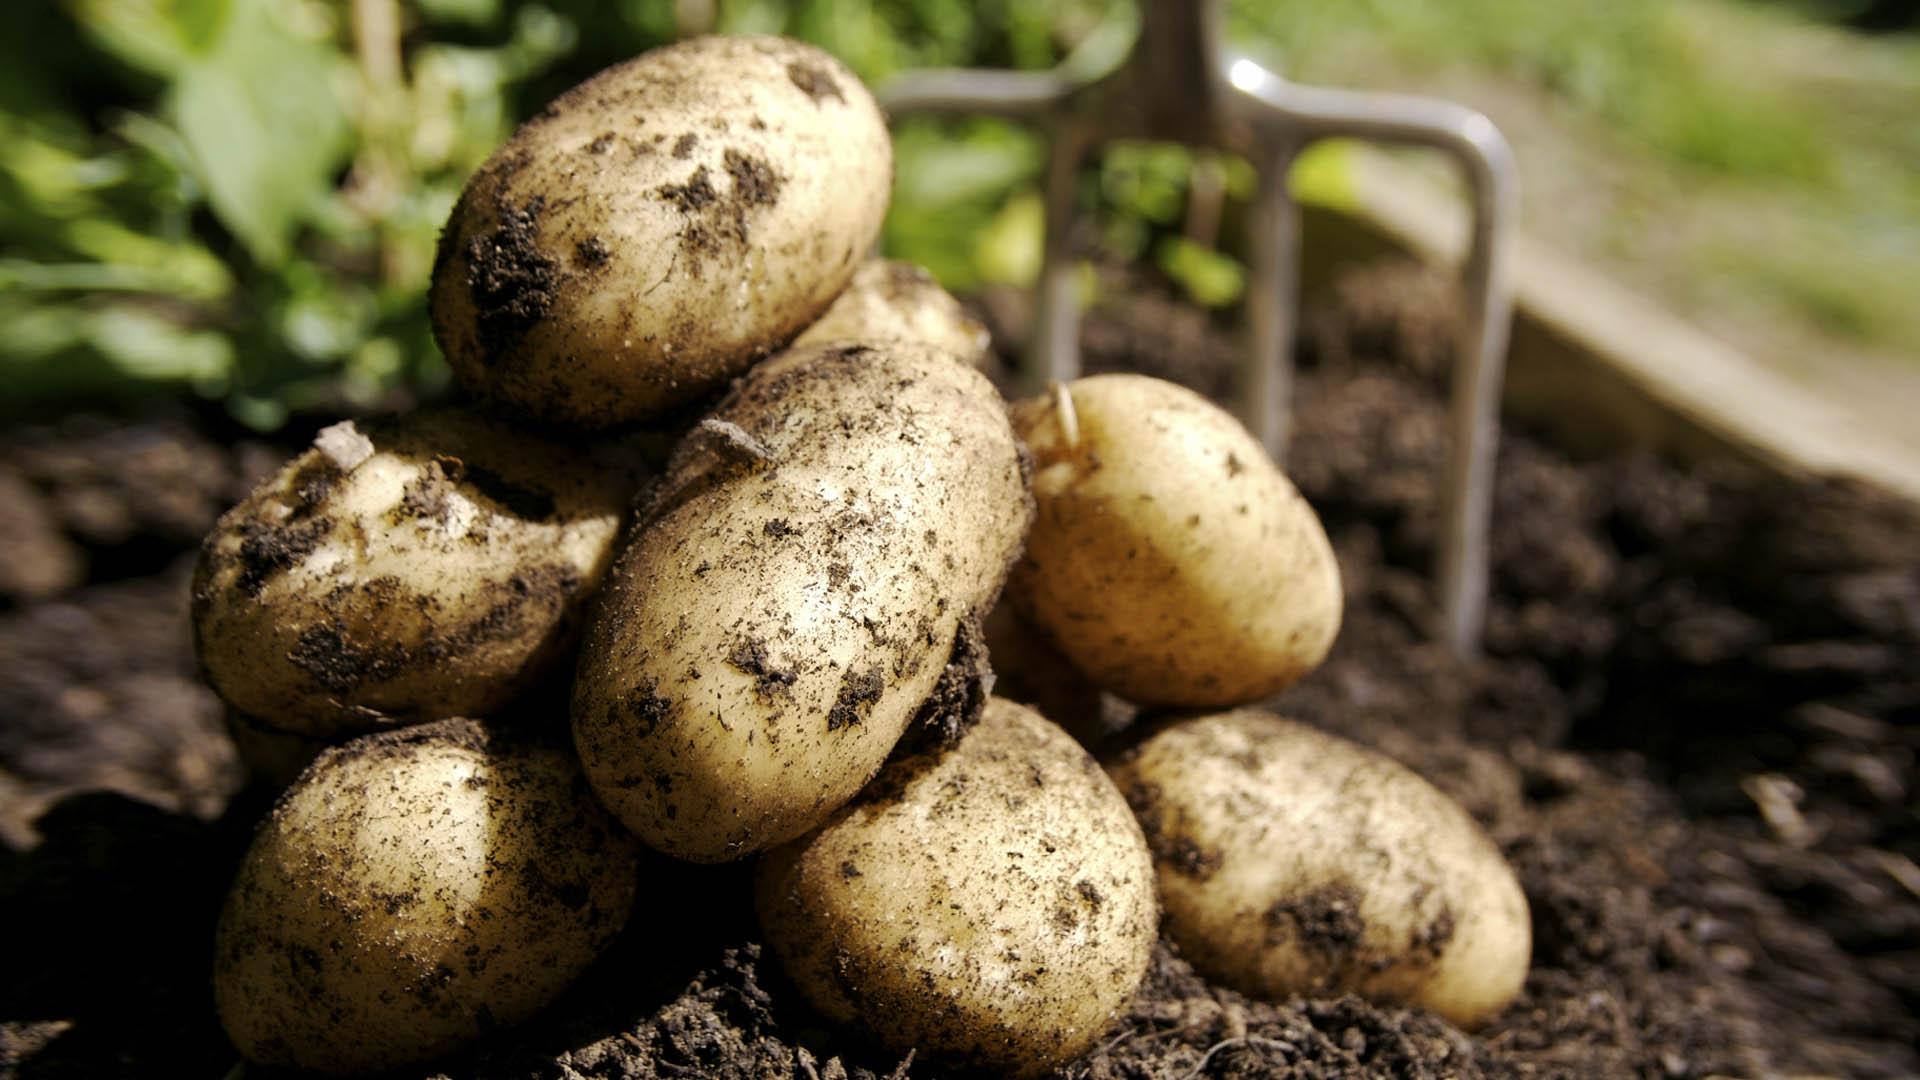 Кемира картофельная помогает картофелю рости лучше